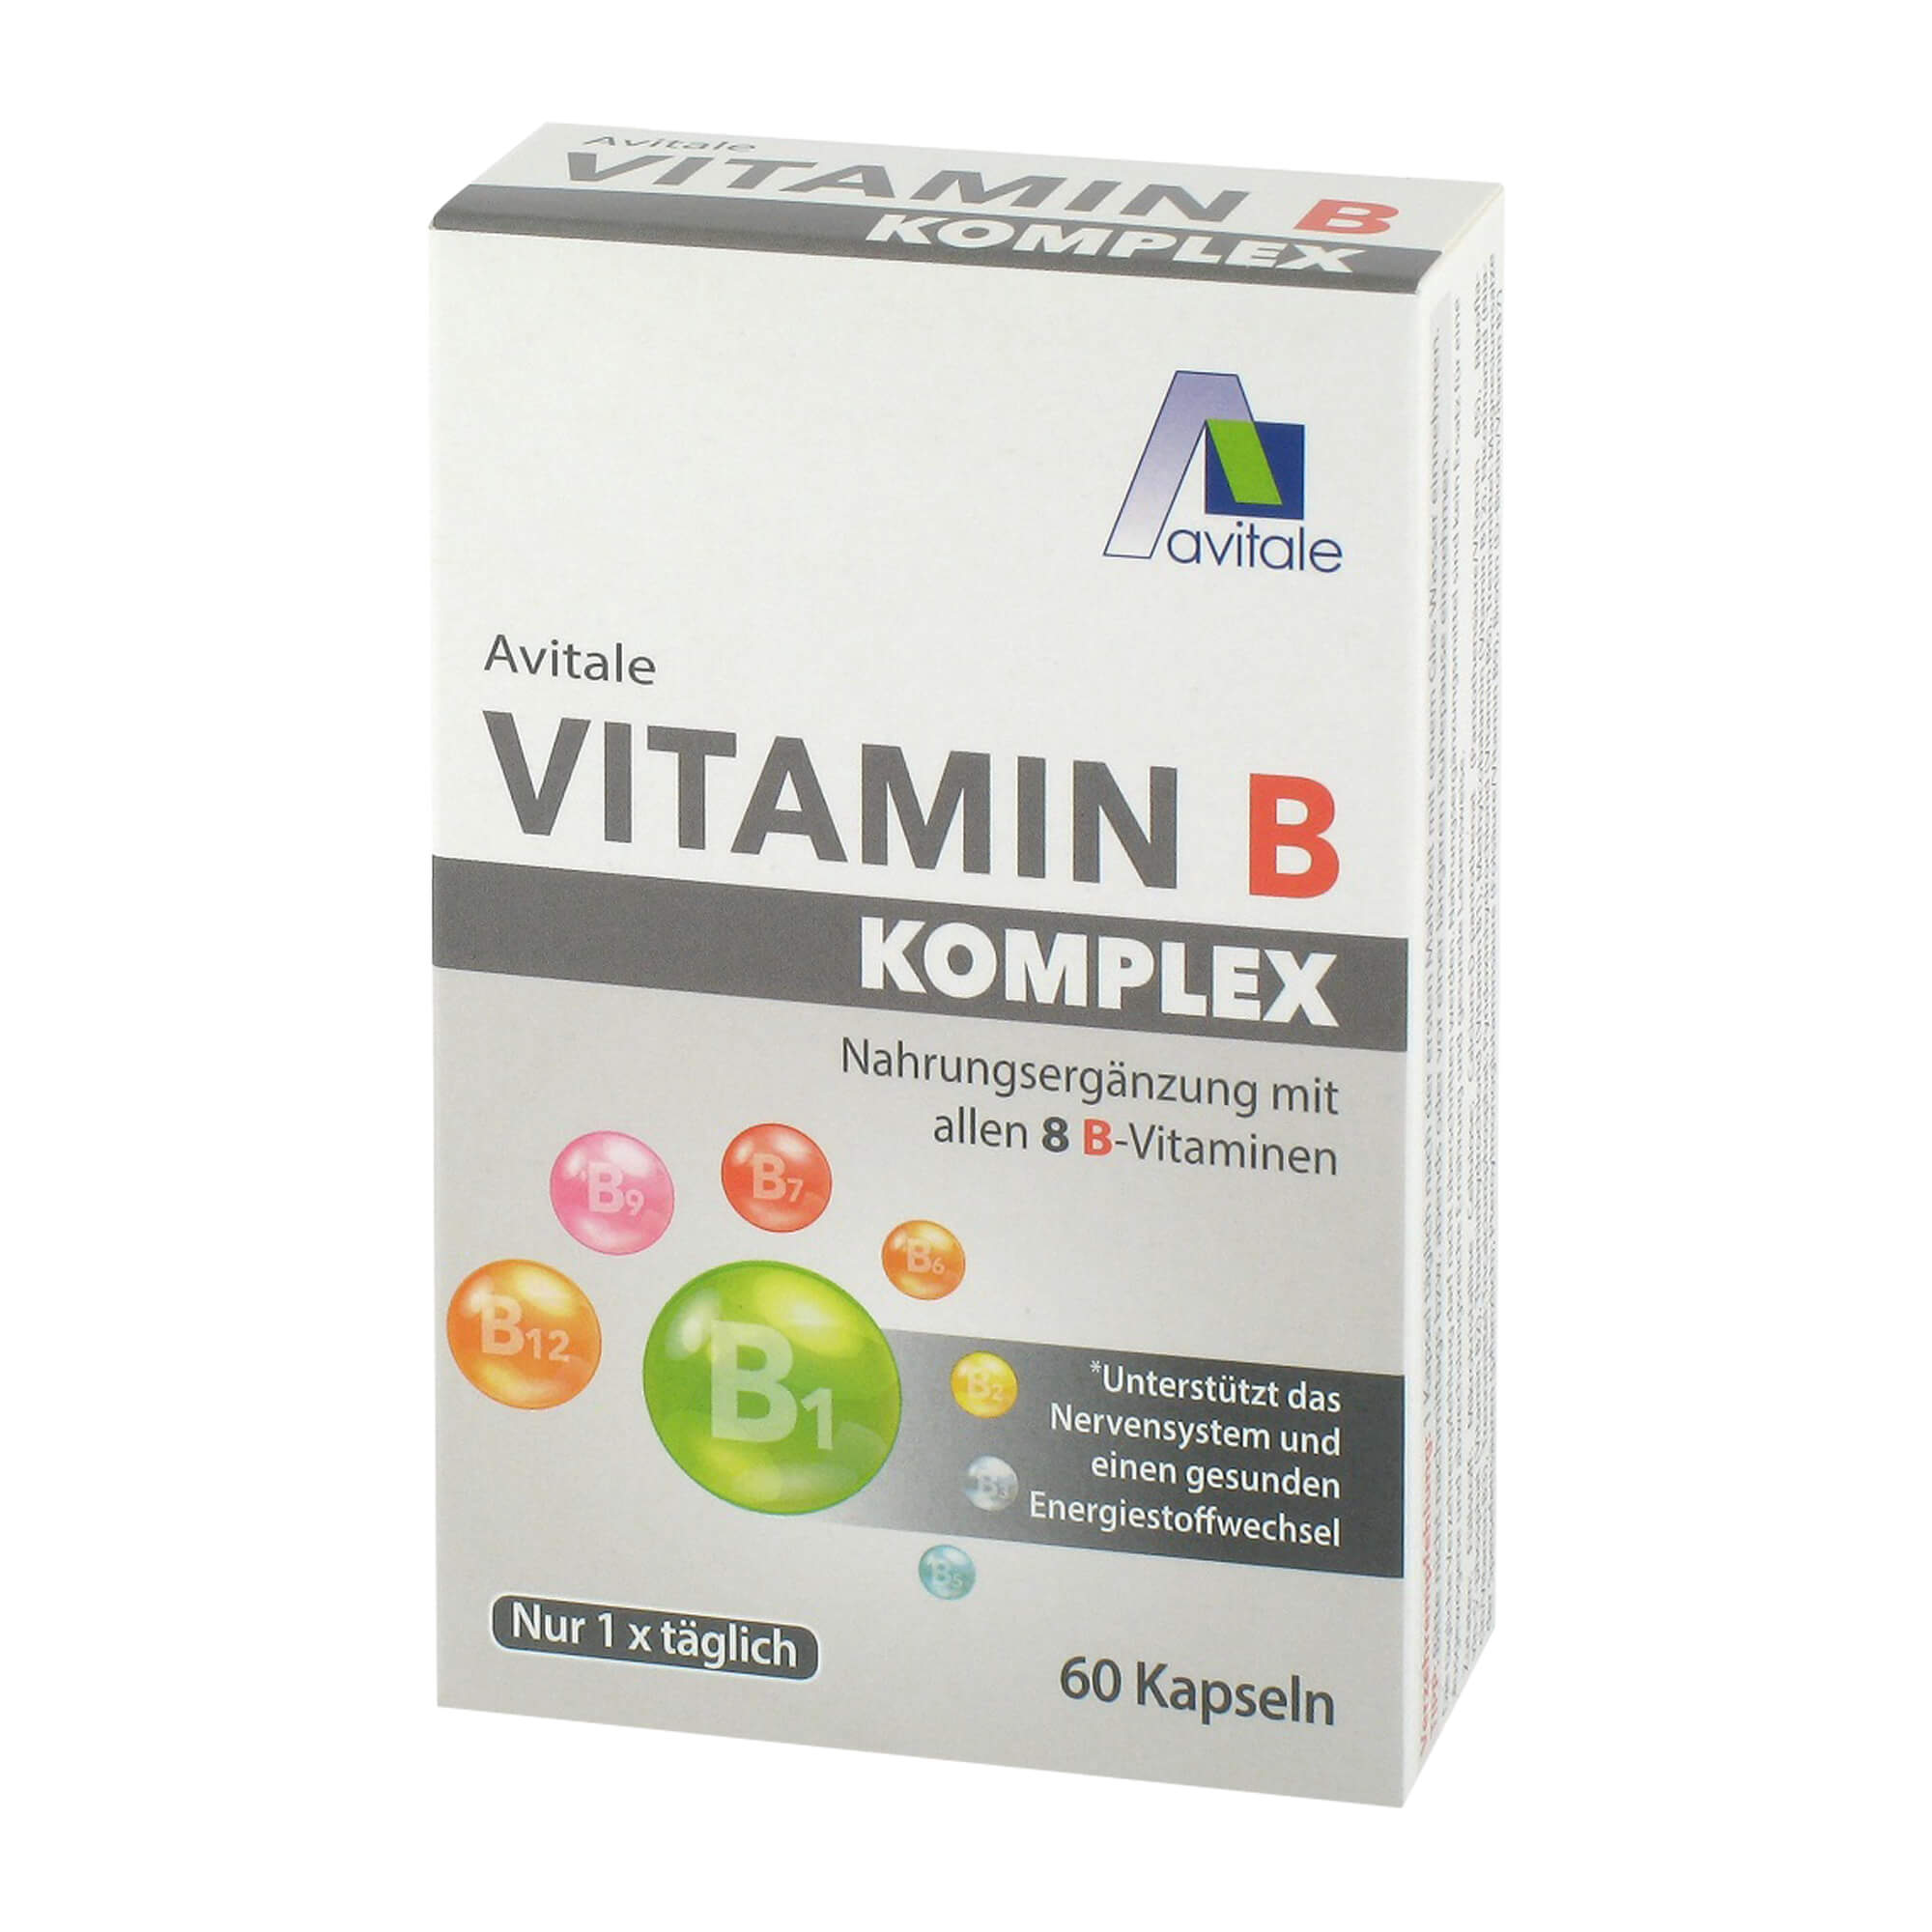 Nahrungsergänzungsmittel mit allen acht B-Vitaminen.